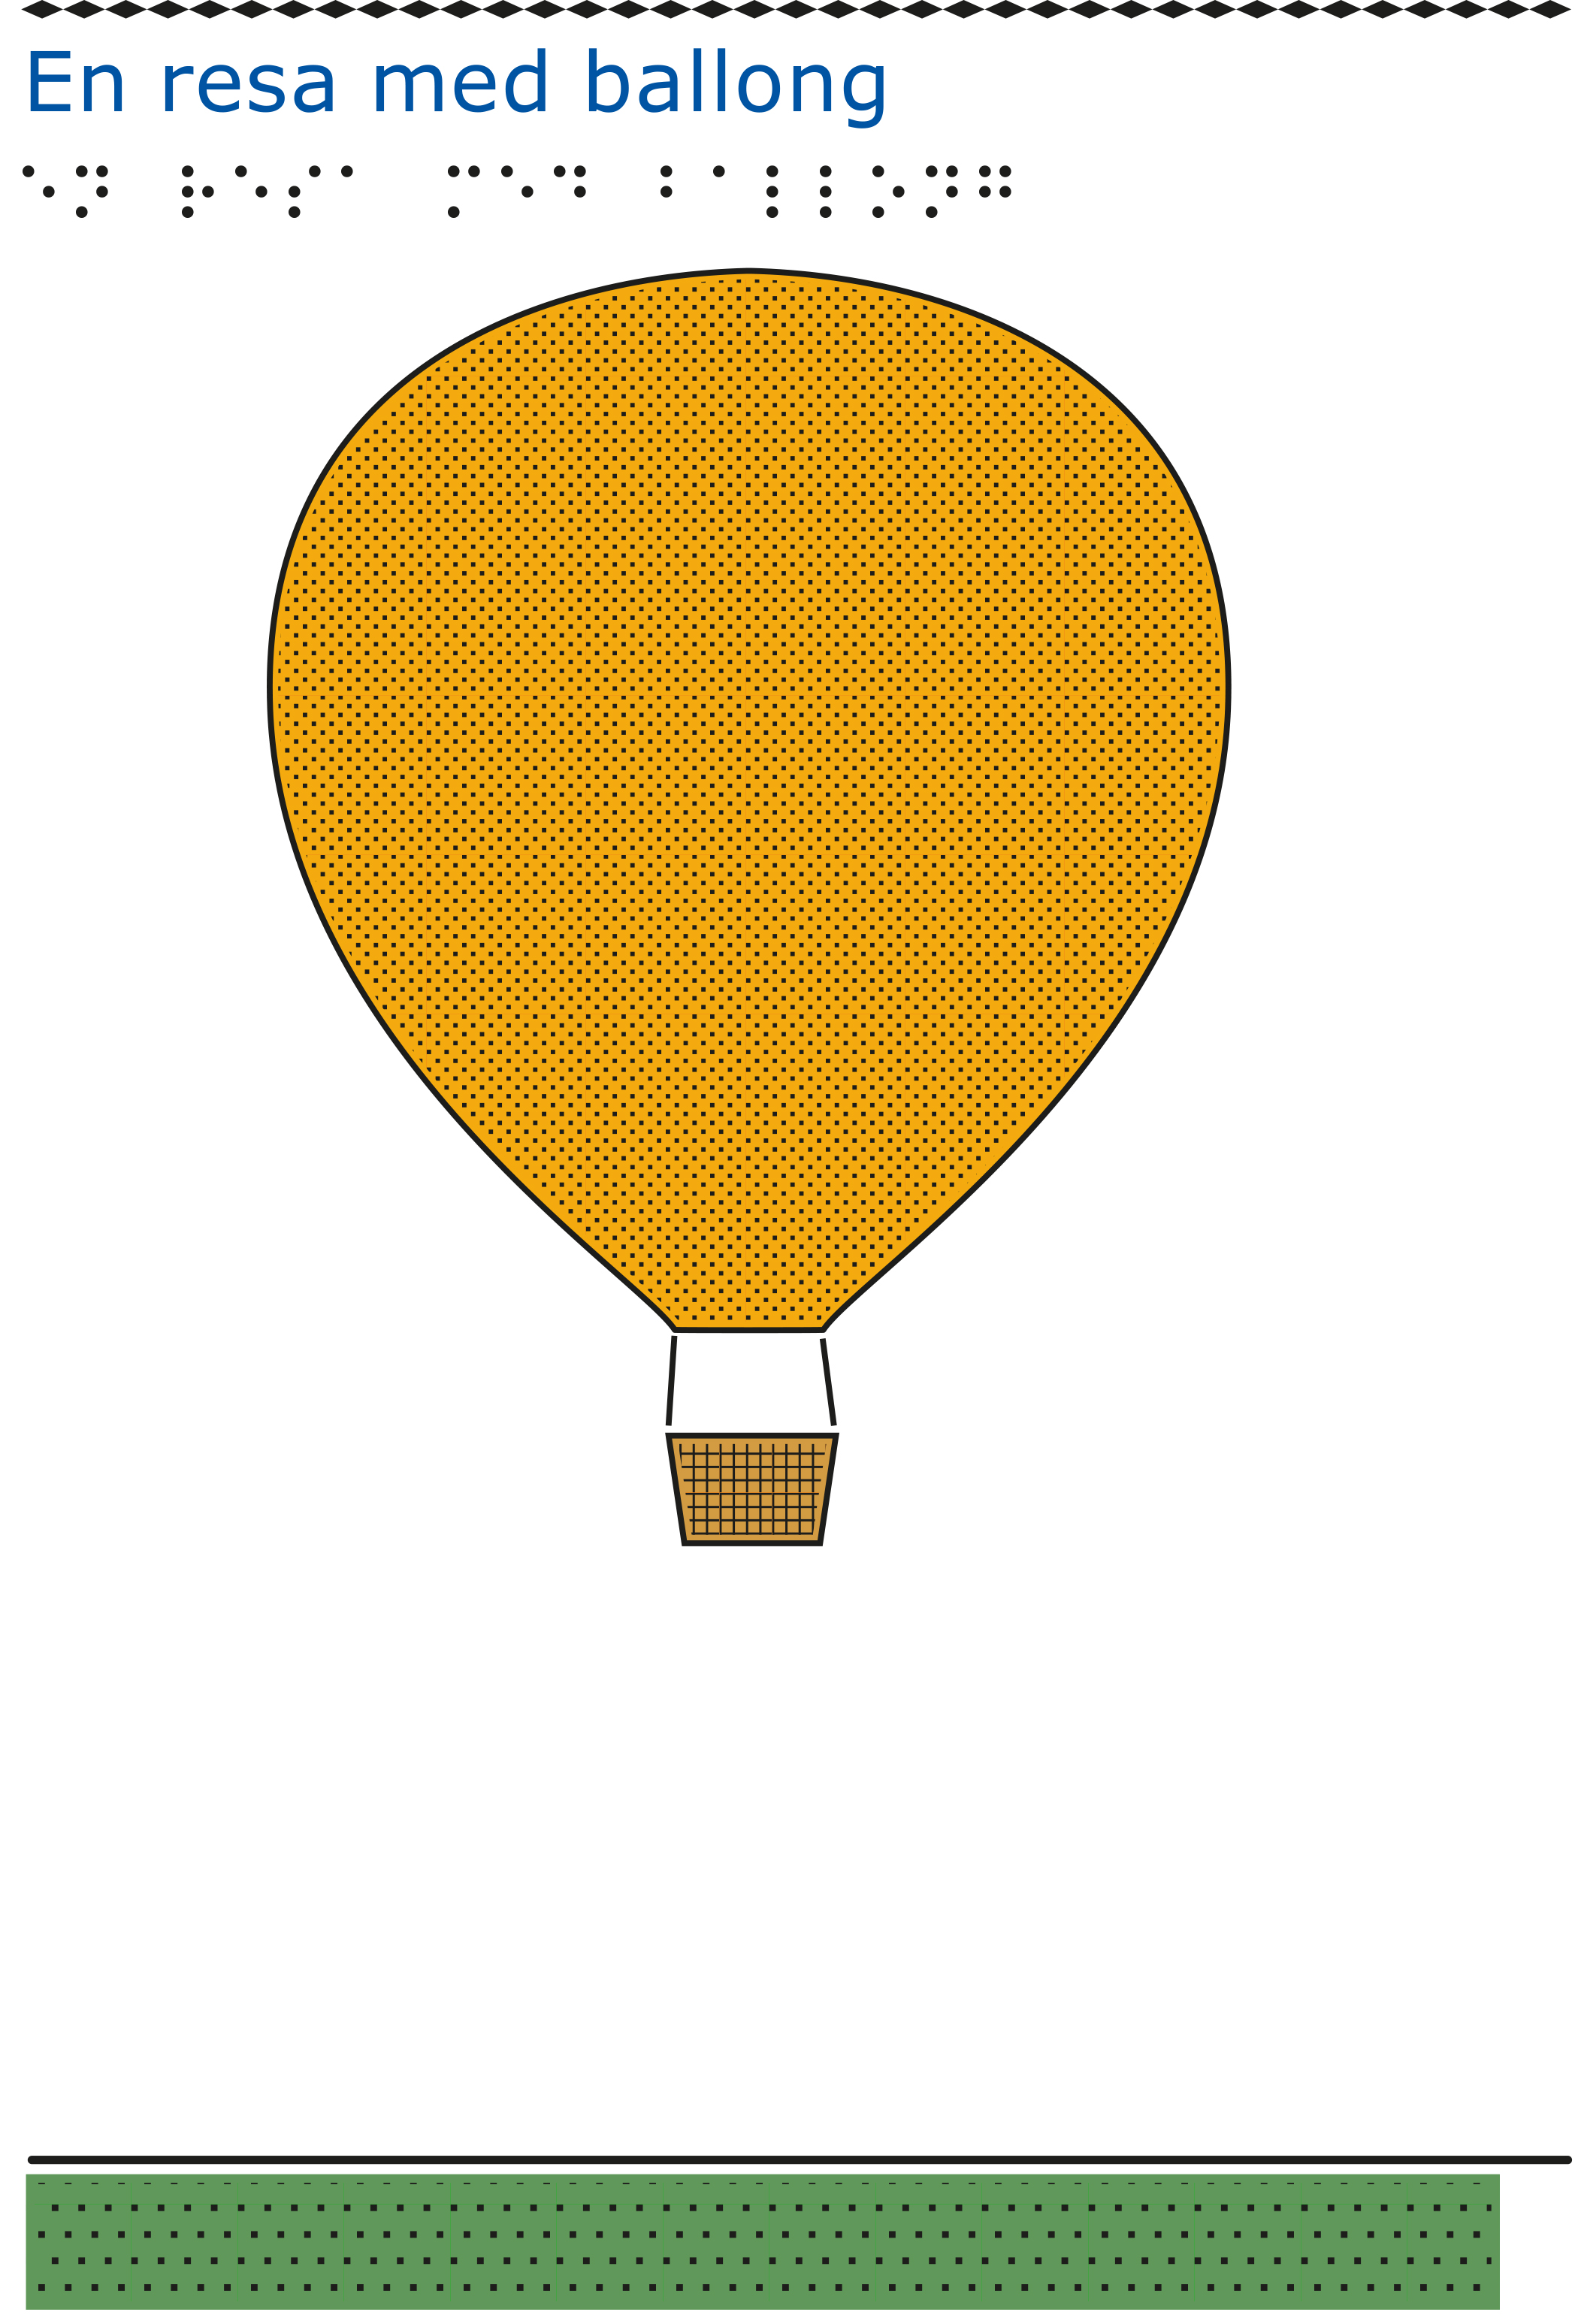 En gul luftballong svävar ovanför en grön gräsplätt mot en vit himmel.